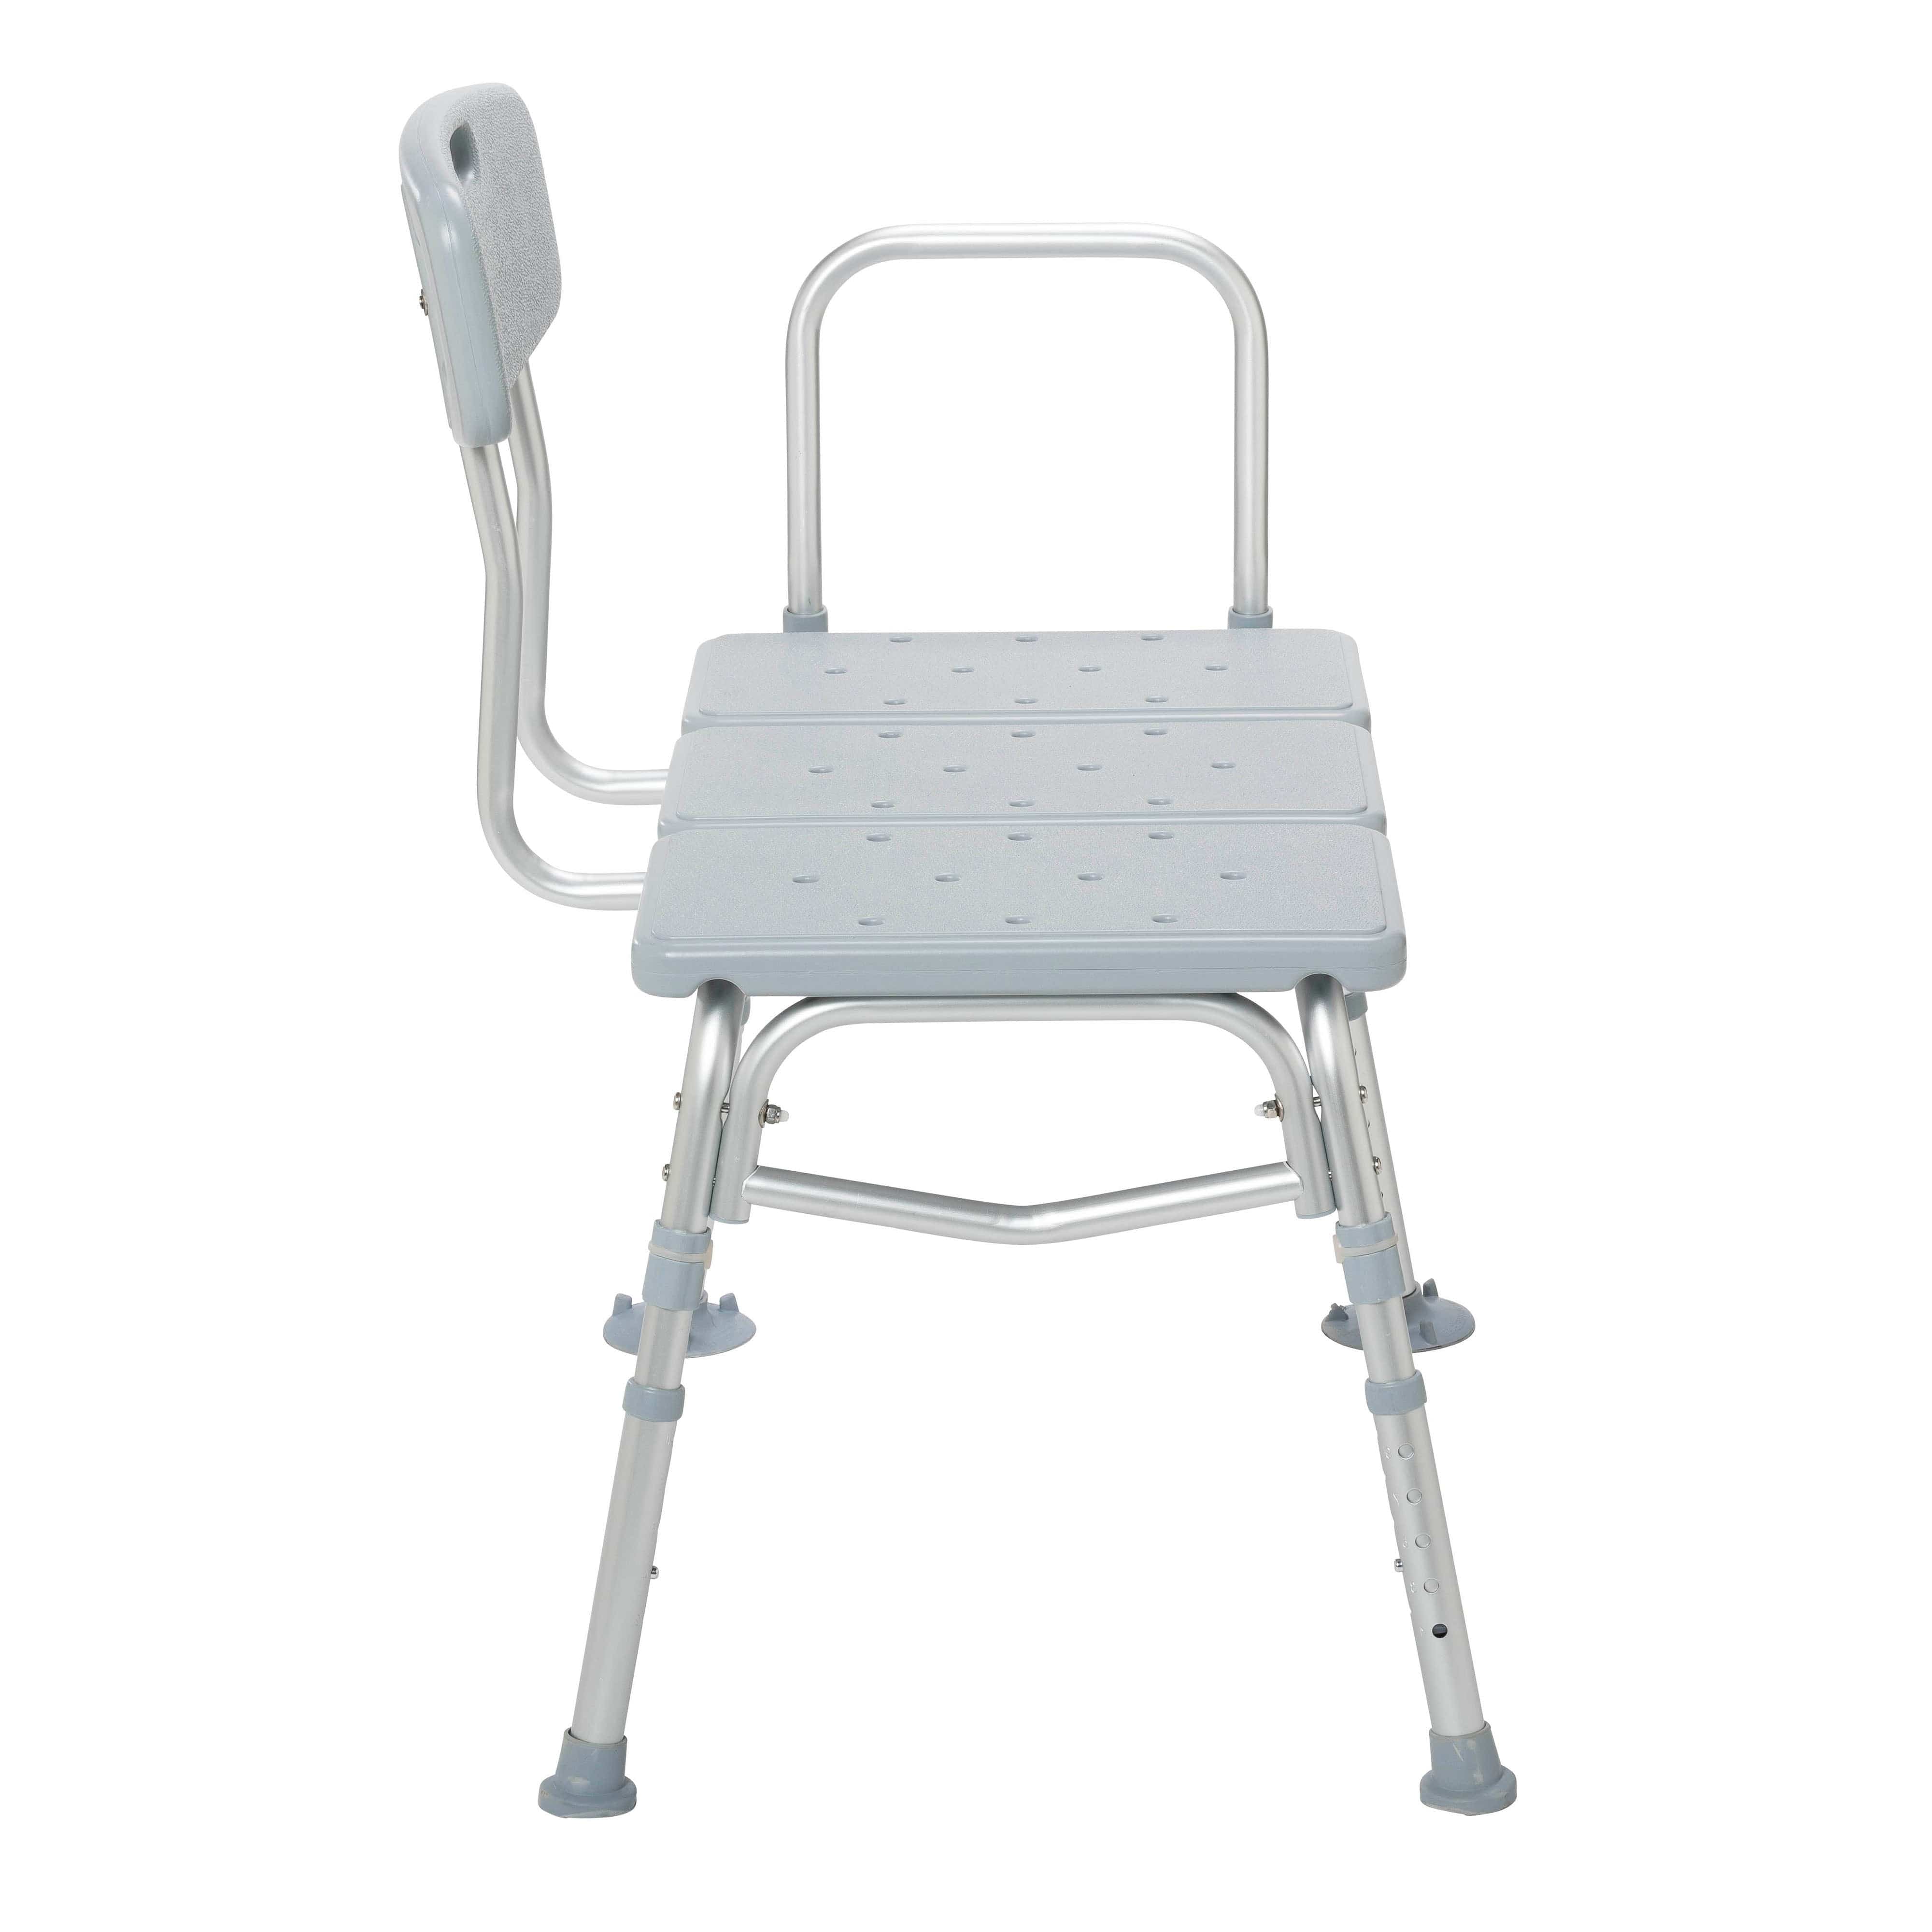 Drive Medical Bathroom Safety Drive Medical Plastic Transfer Bench with Adjustable Backrest